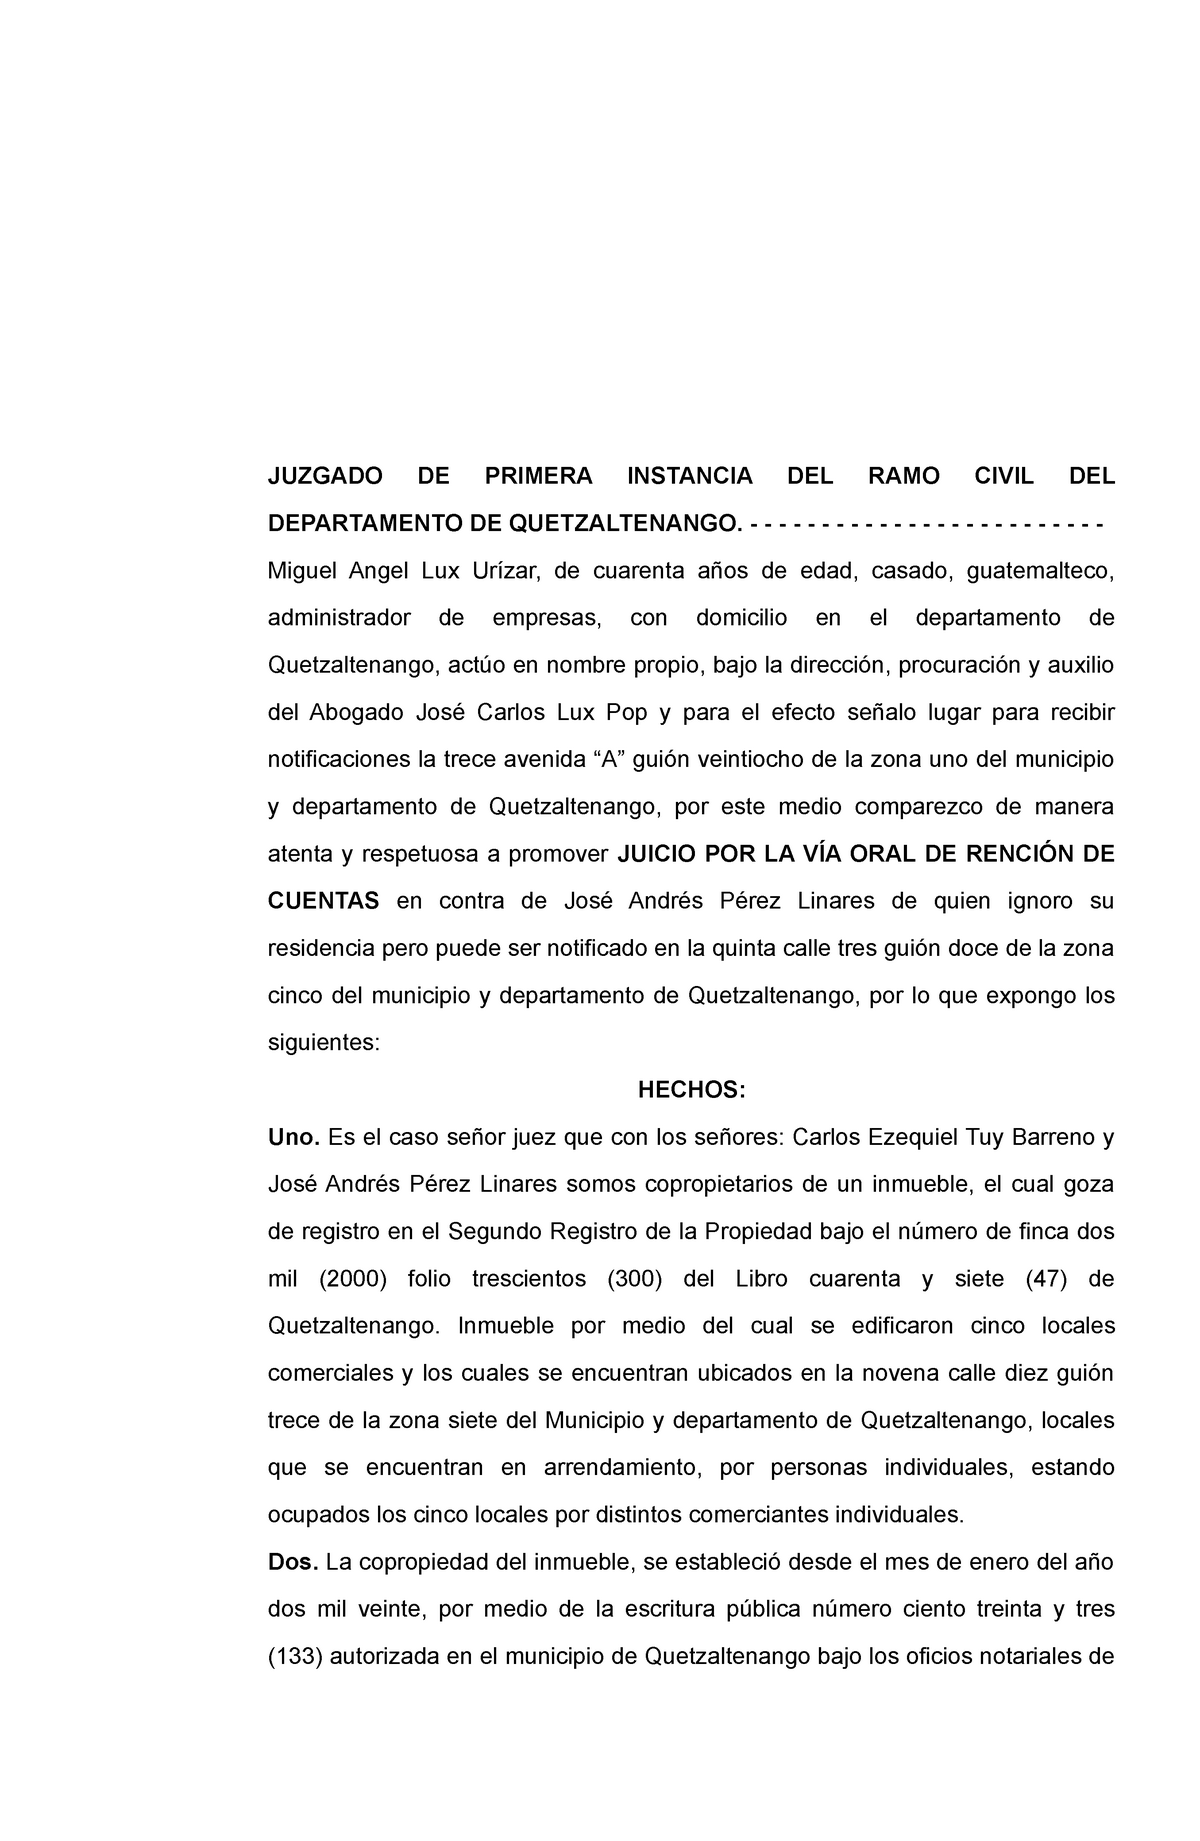 Demanda de Juicio Oral de Rendición de cuentas - JUZGADO DE PRIMERA  INSTANCIA DEL RAMO CIVIL DEL - Studocu